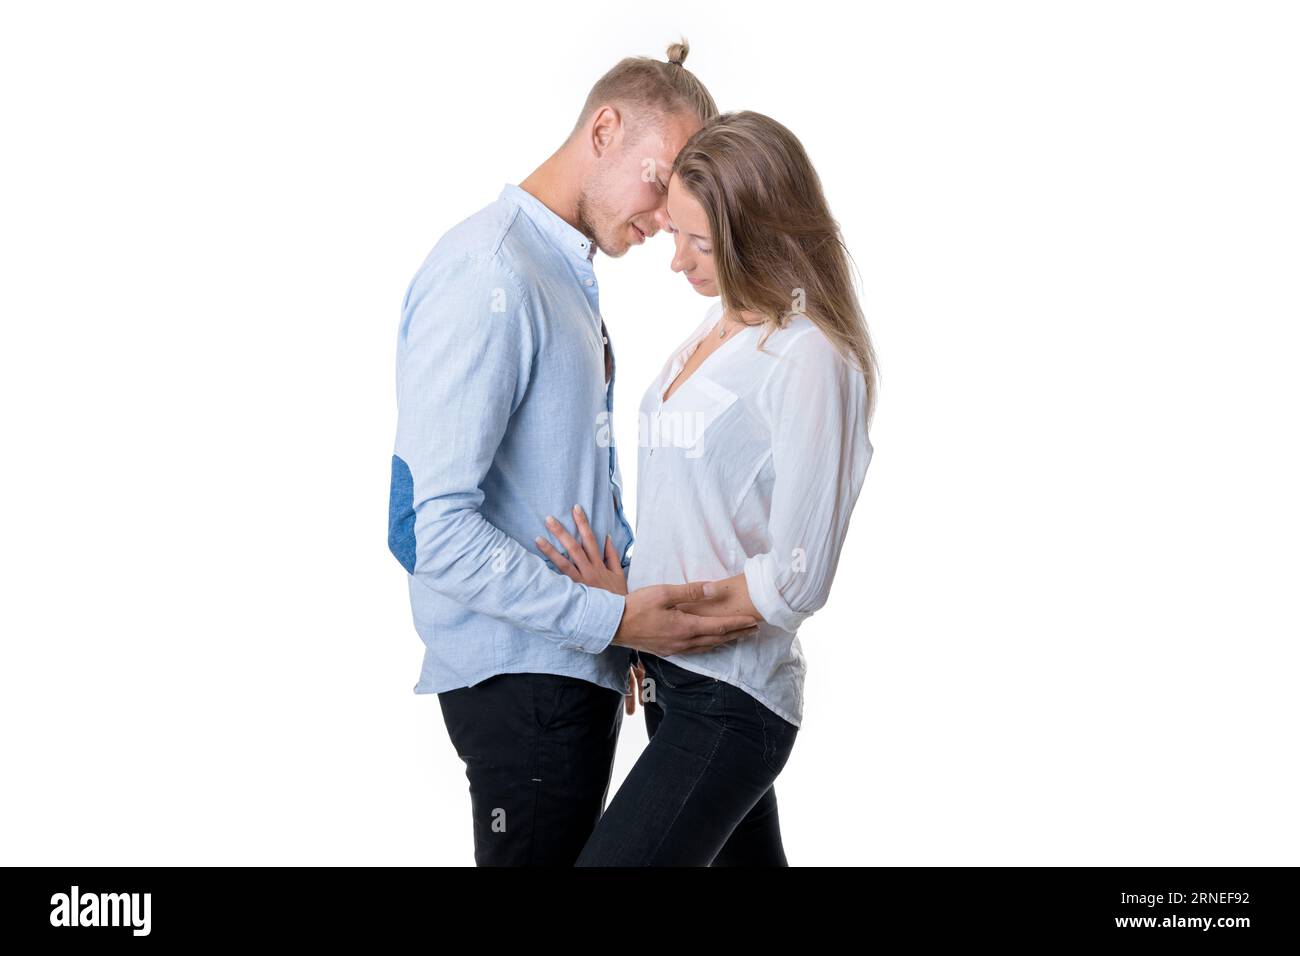 Junge Paare isoliert auf weißem Stand und Umarmung, während sie direkt vor einem liebevollen Kuss in dieser romantischen Situation sind Stockfoto